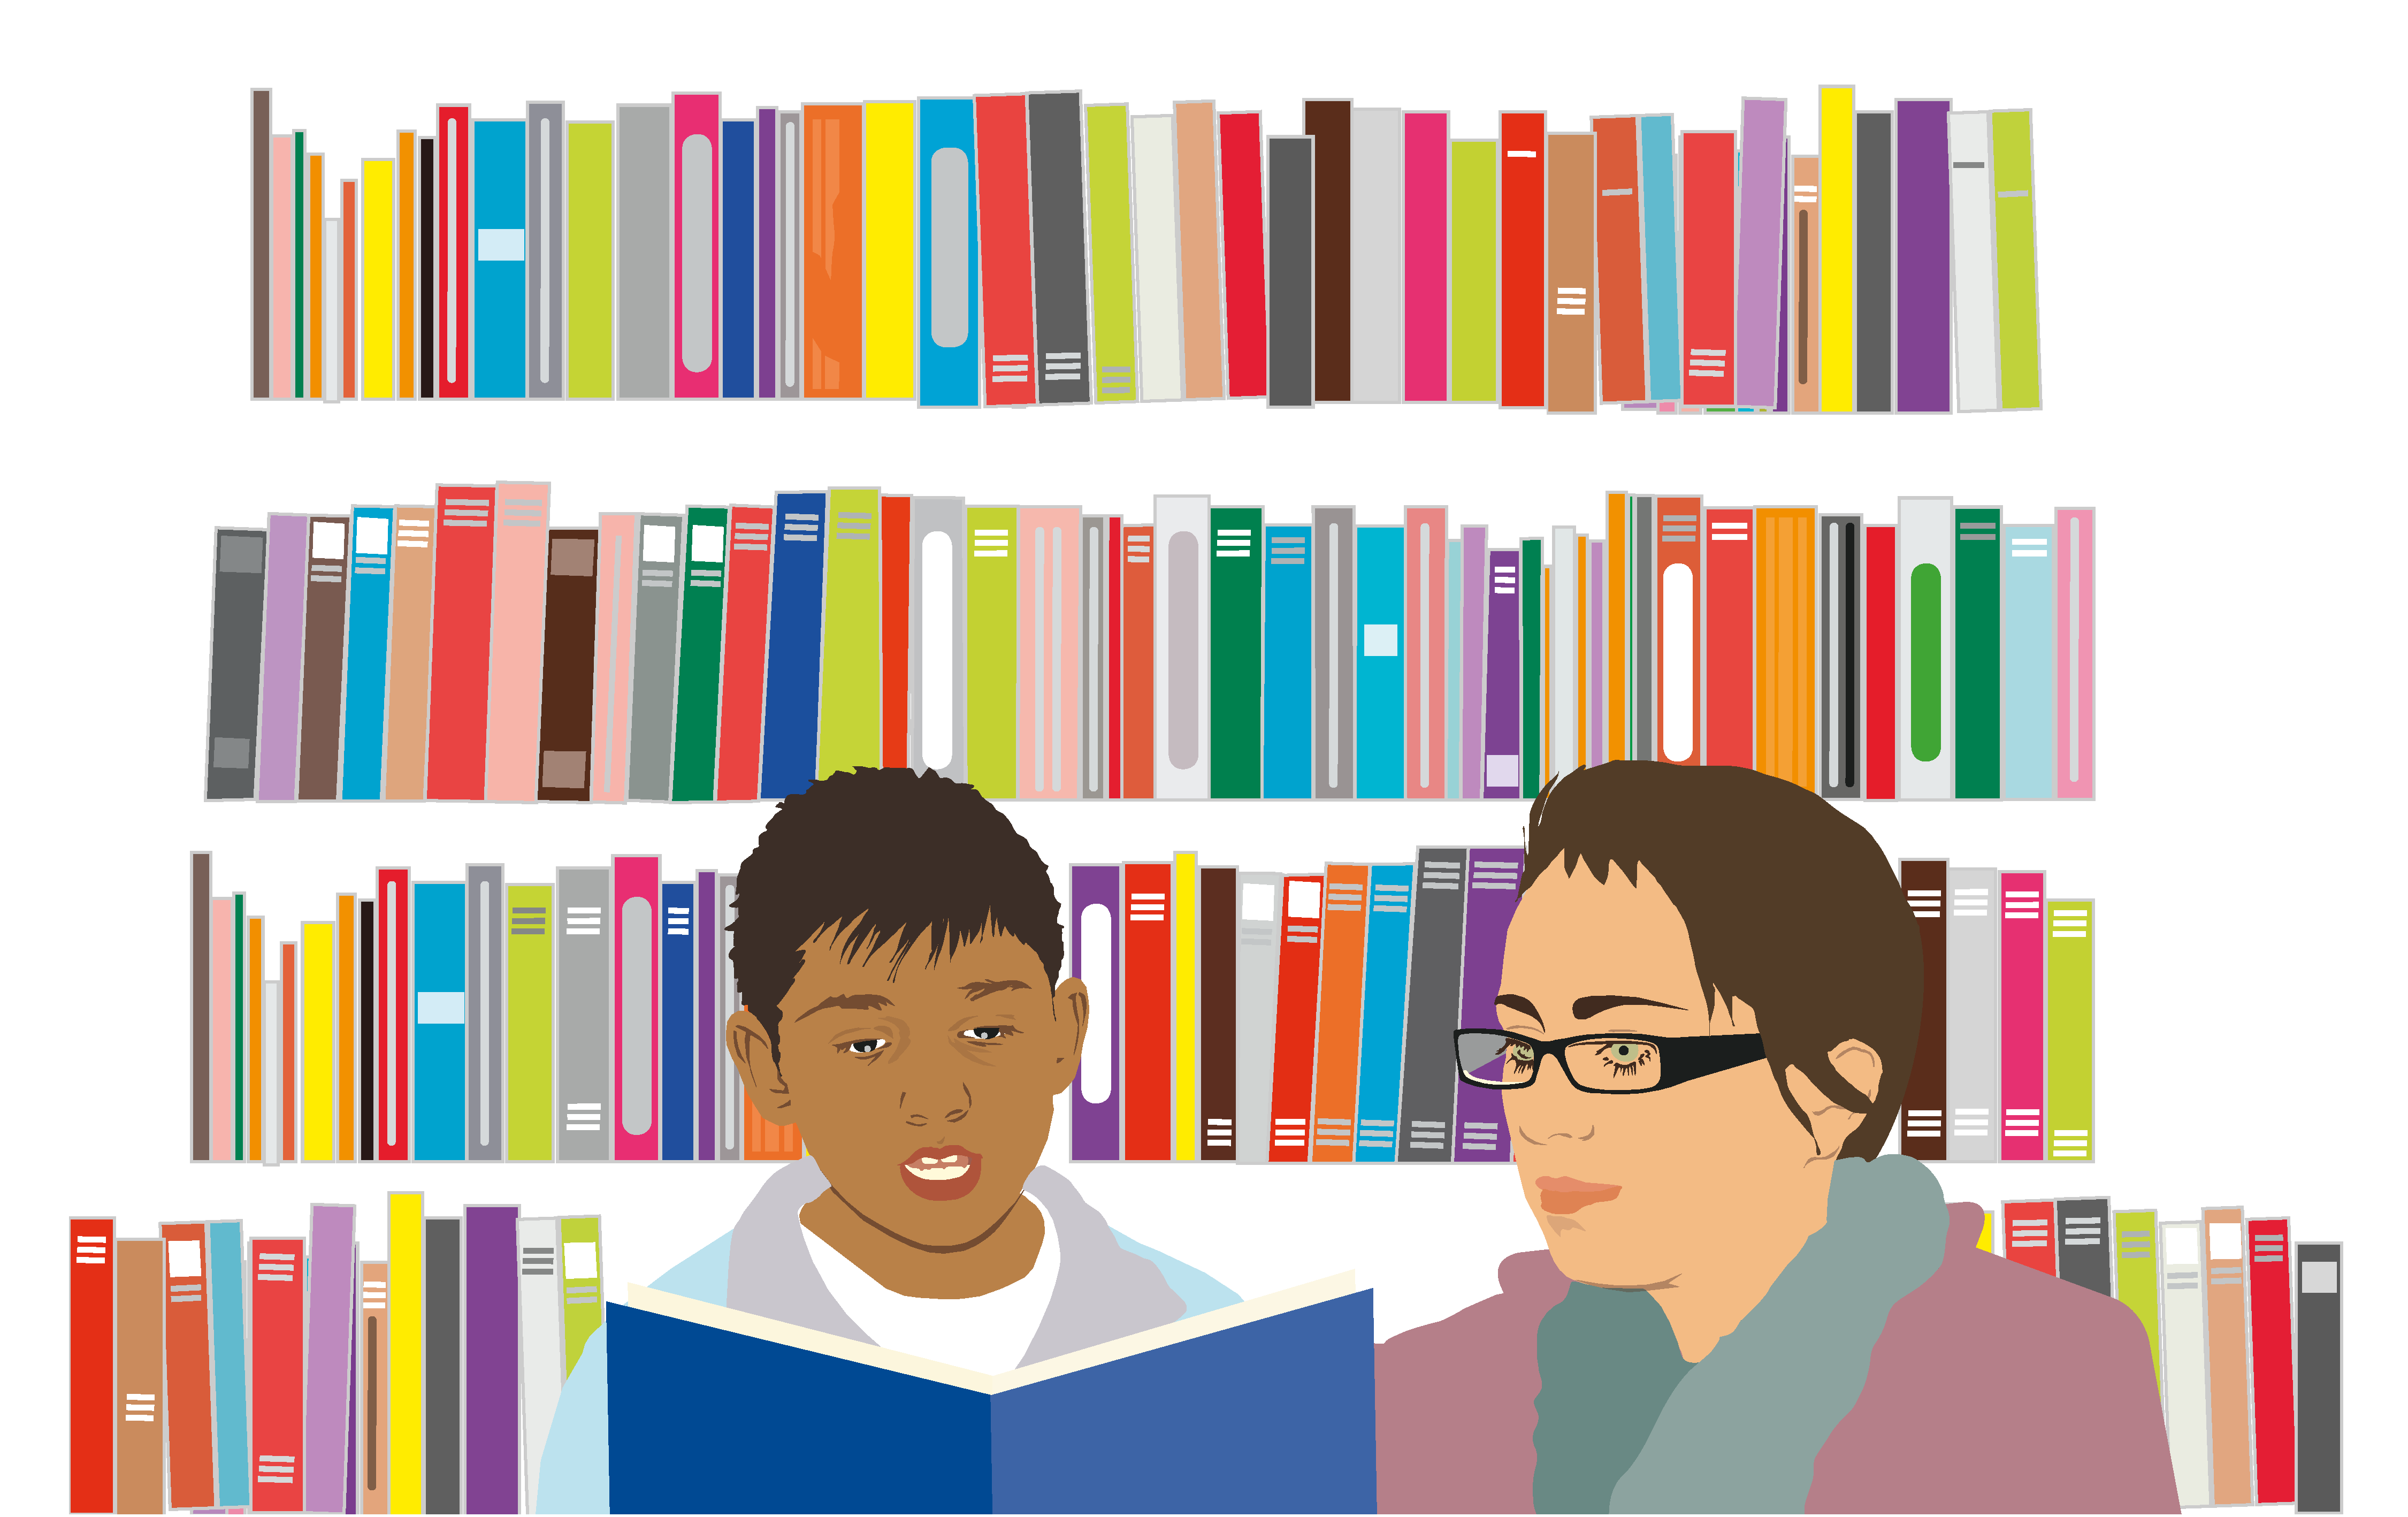 Editorial Illustration | Inklusion: Vor dem Hintergrund von einem gut gefüllten Bücherregal liest ein motivierter Grundschüler der geduldigen Lesementorin einen Text vor.